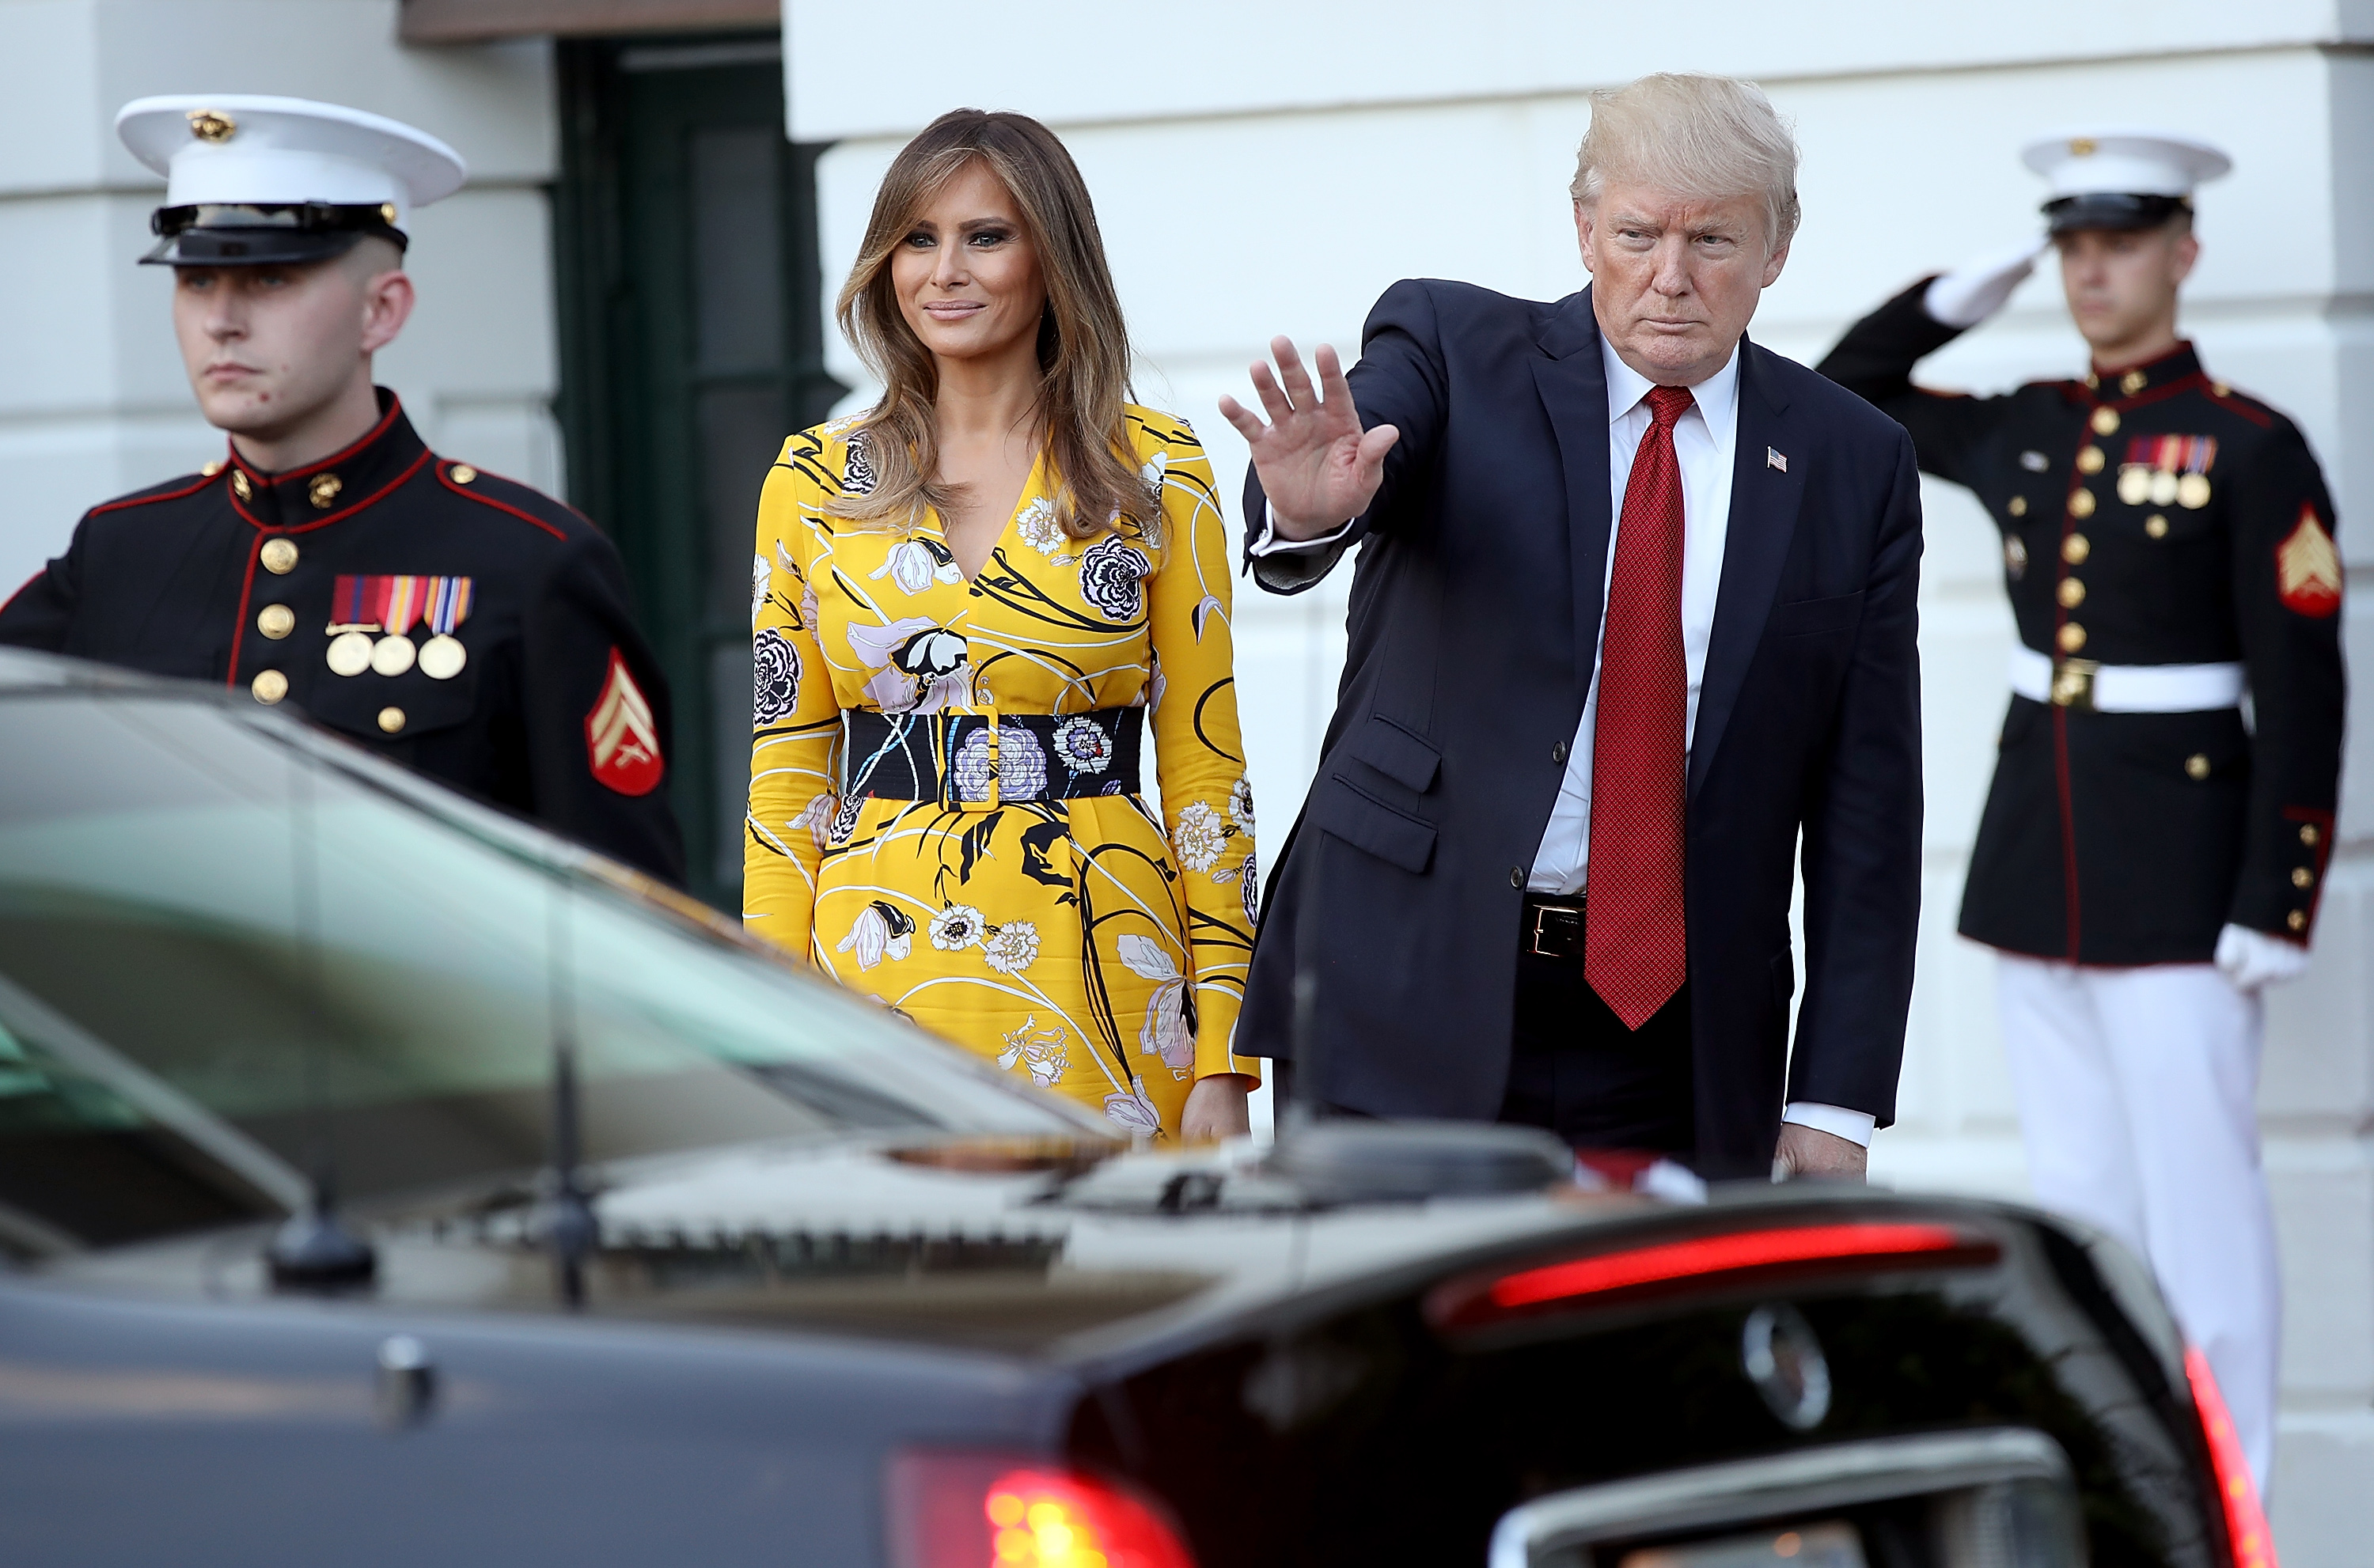 Мелания Тръмп блесна с ярка рокля на официална среща в Белия дом. Първата дама на САЩ избра жълта рокля с флорални мотиви за разговора с индийския премиер Нарендра Моди.